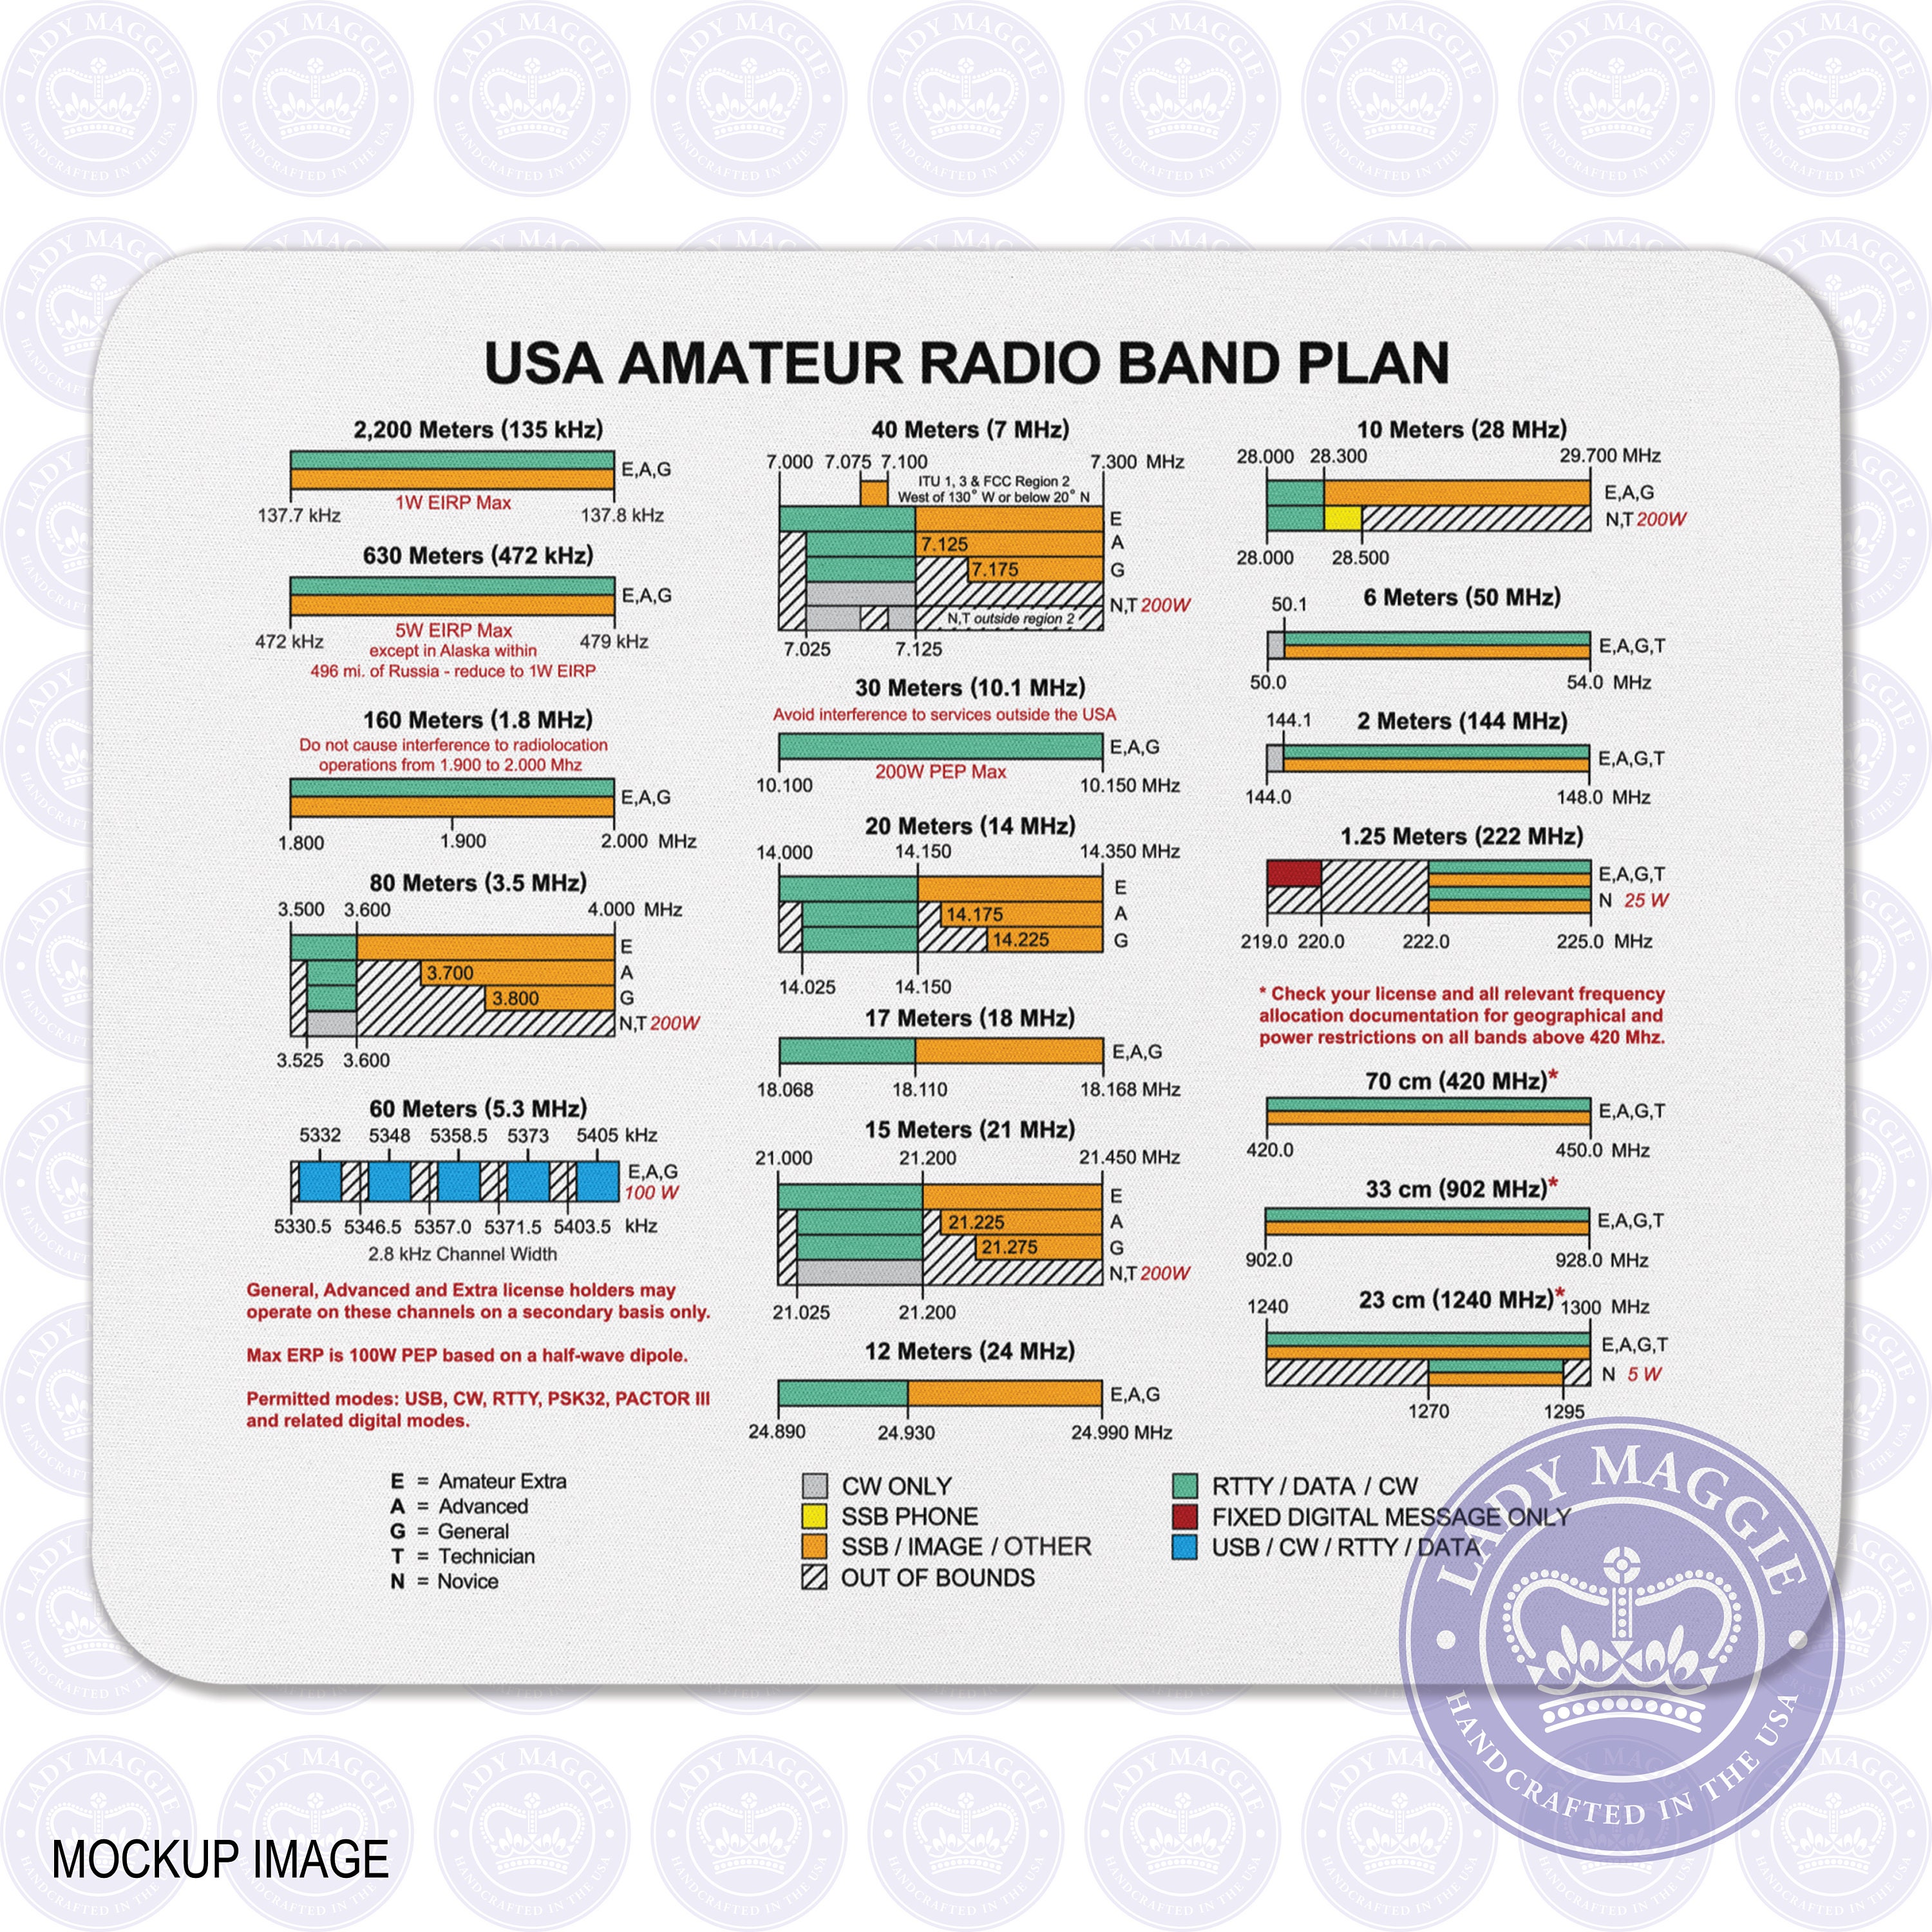 USA Amateur Radio Band Plan Mouse